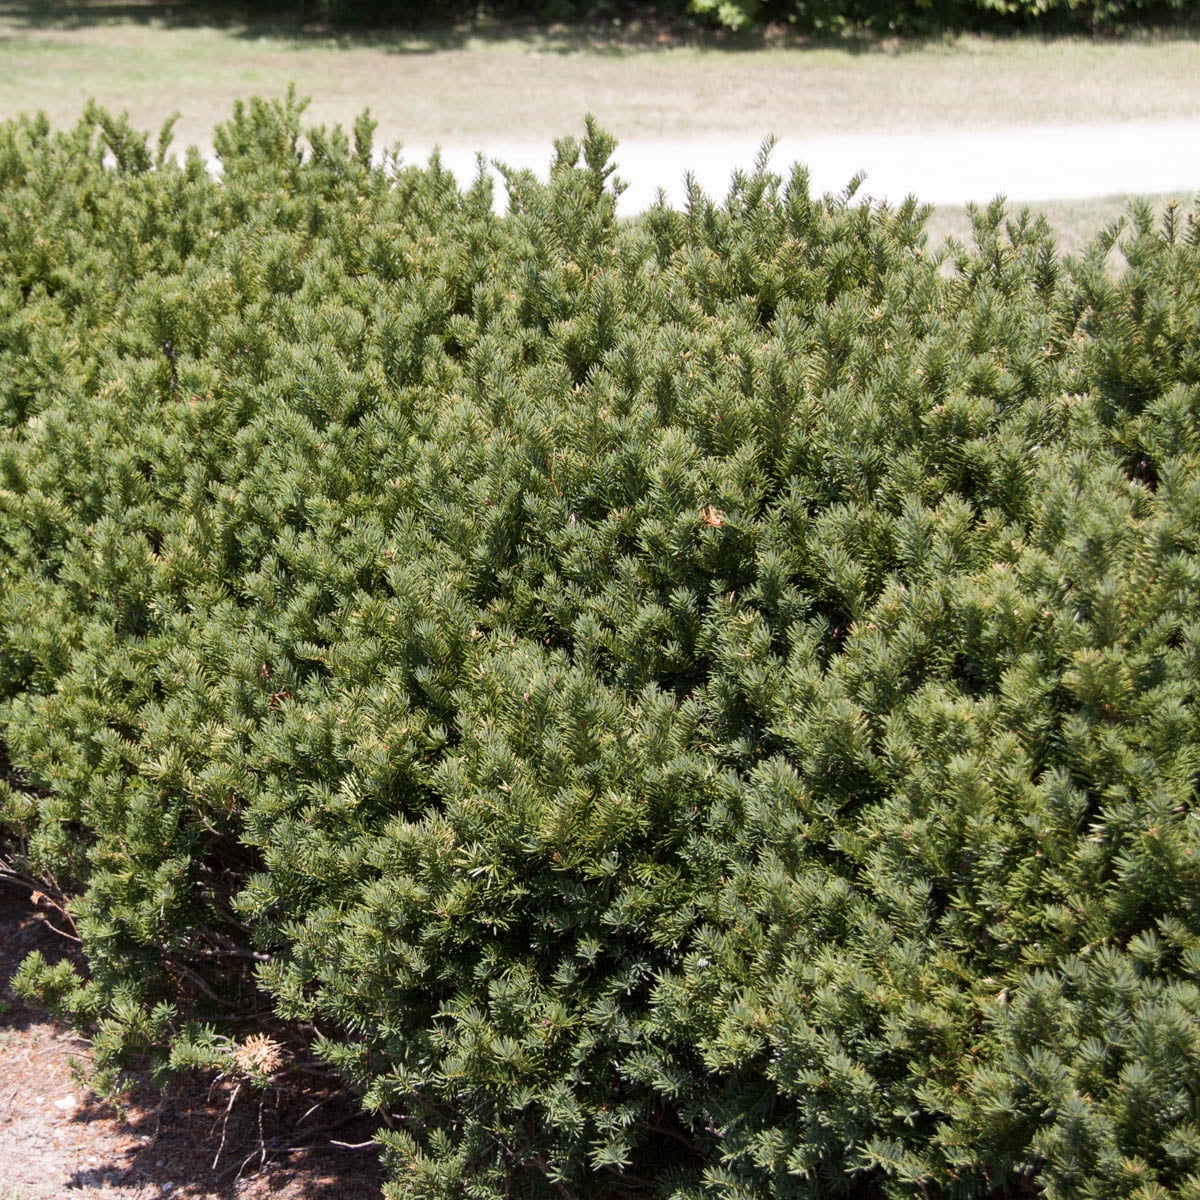 evergreen yew shrubs